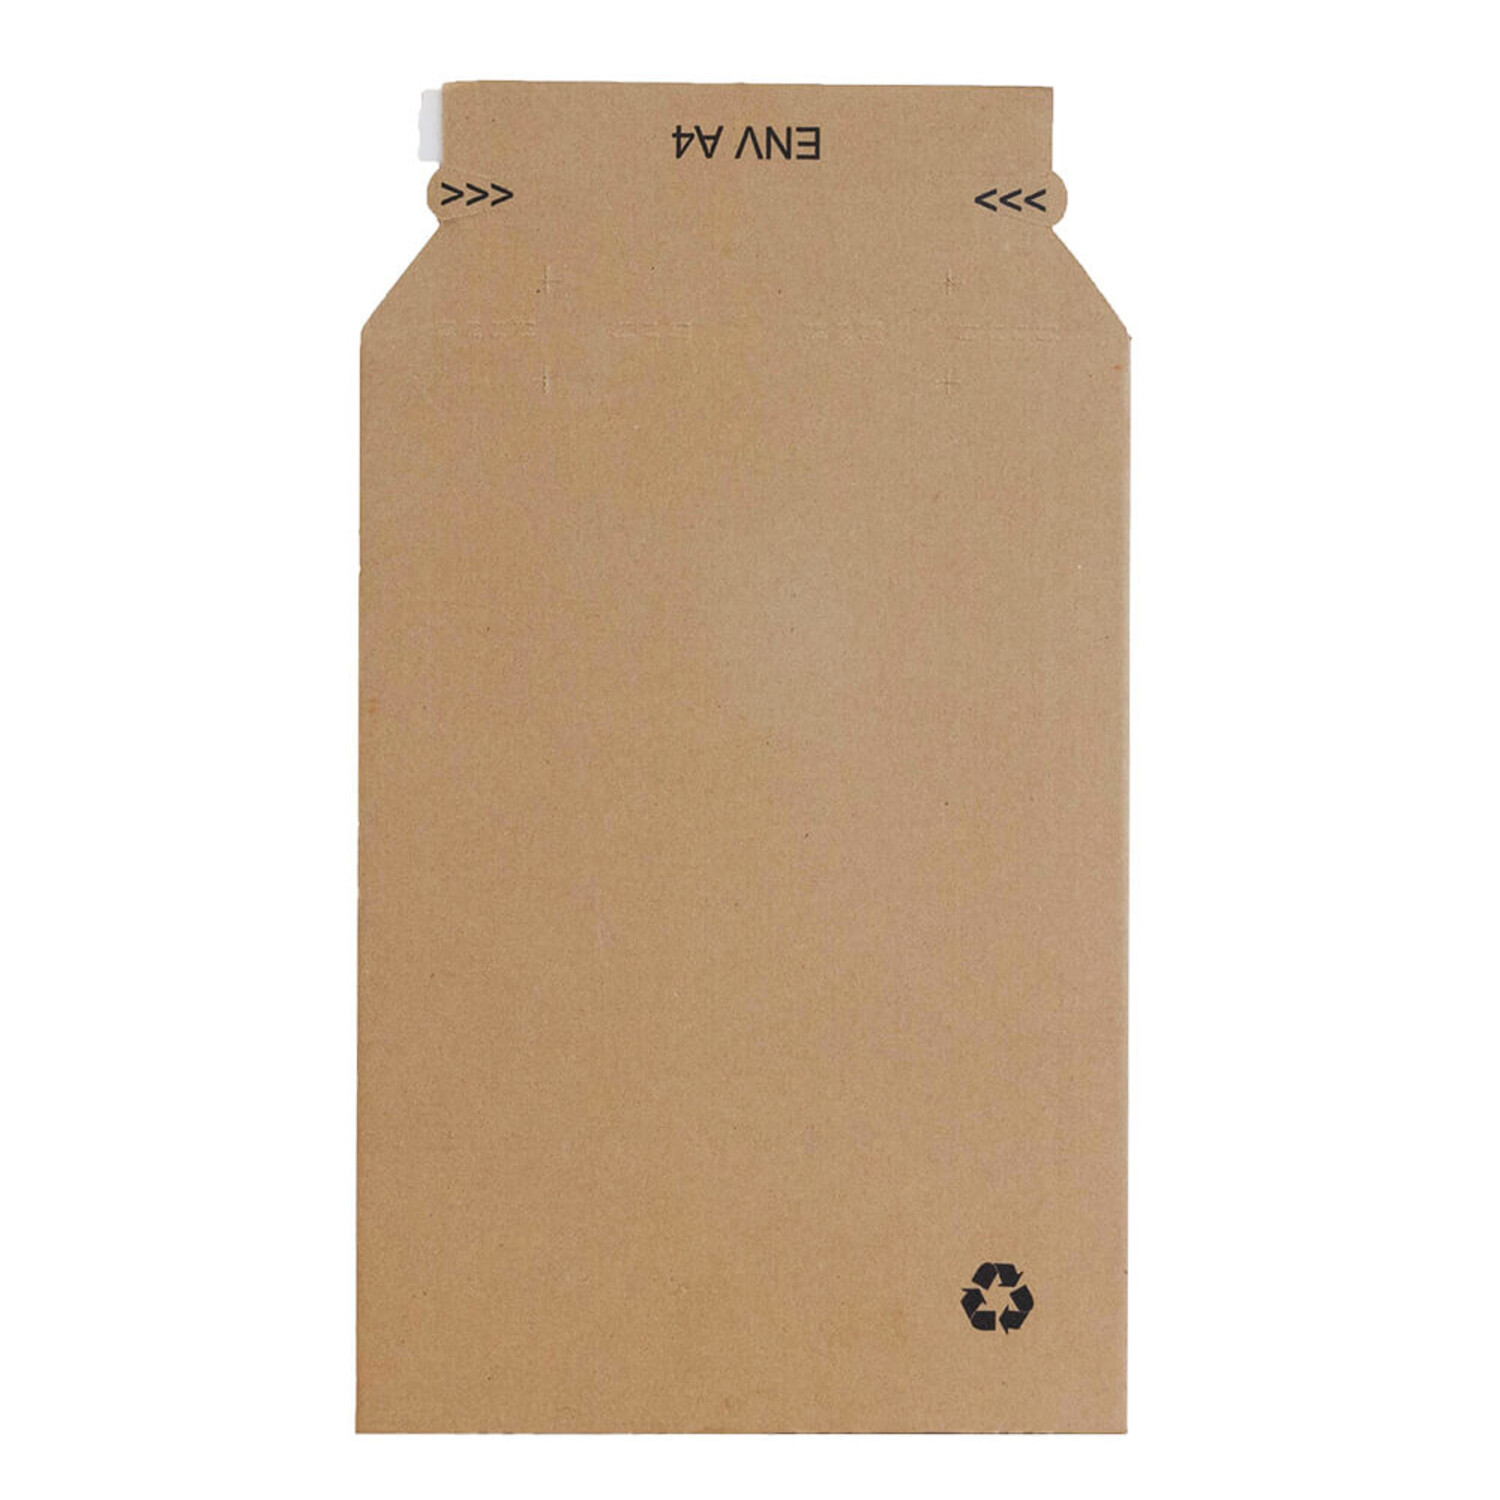 Kartonnen enveloppen A4 nodig? Koop online - Rotim Verpakkingen: carry, we care!